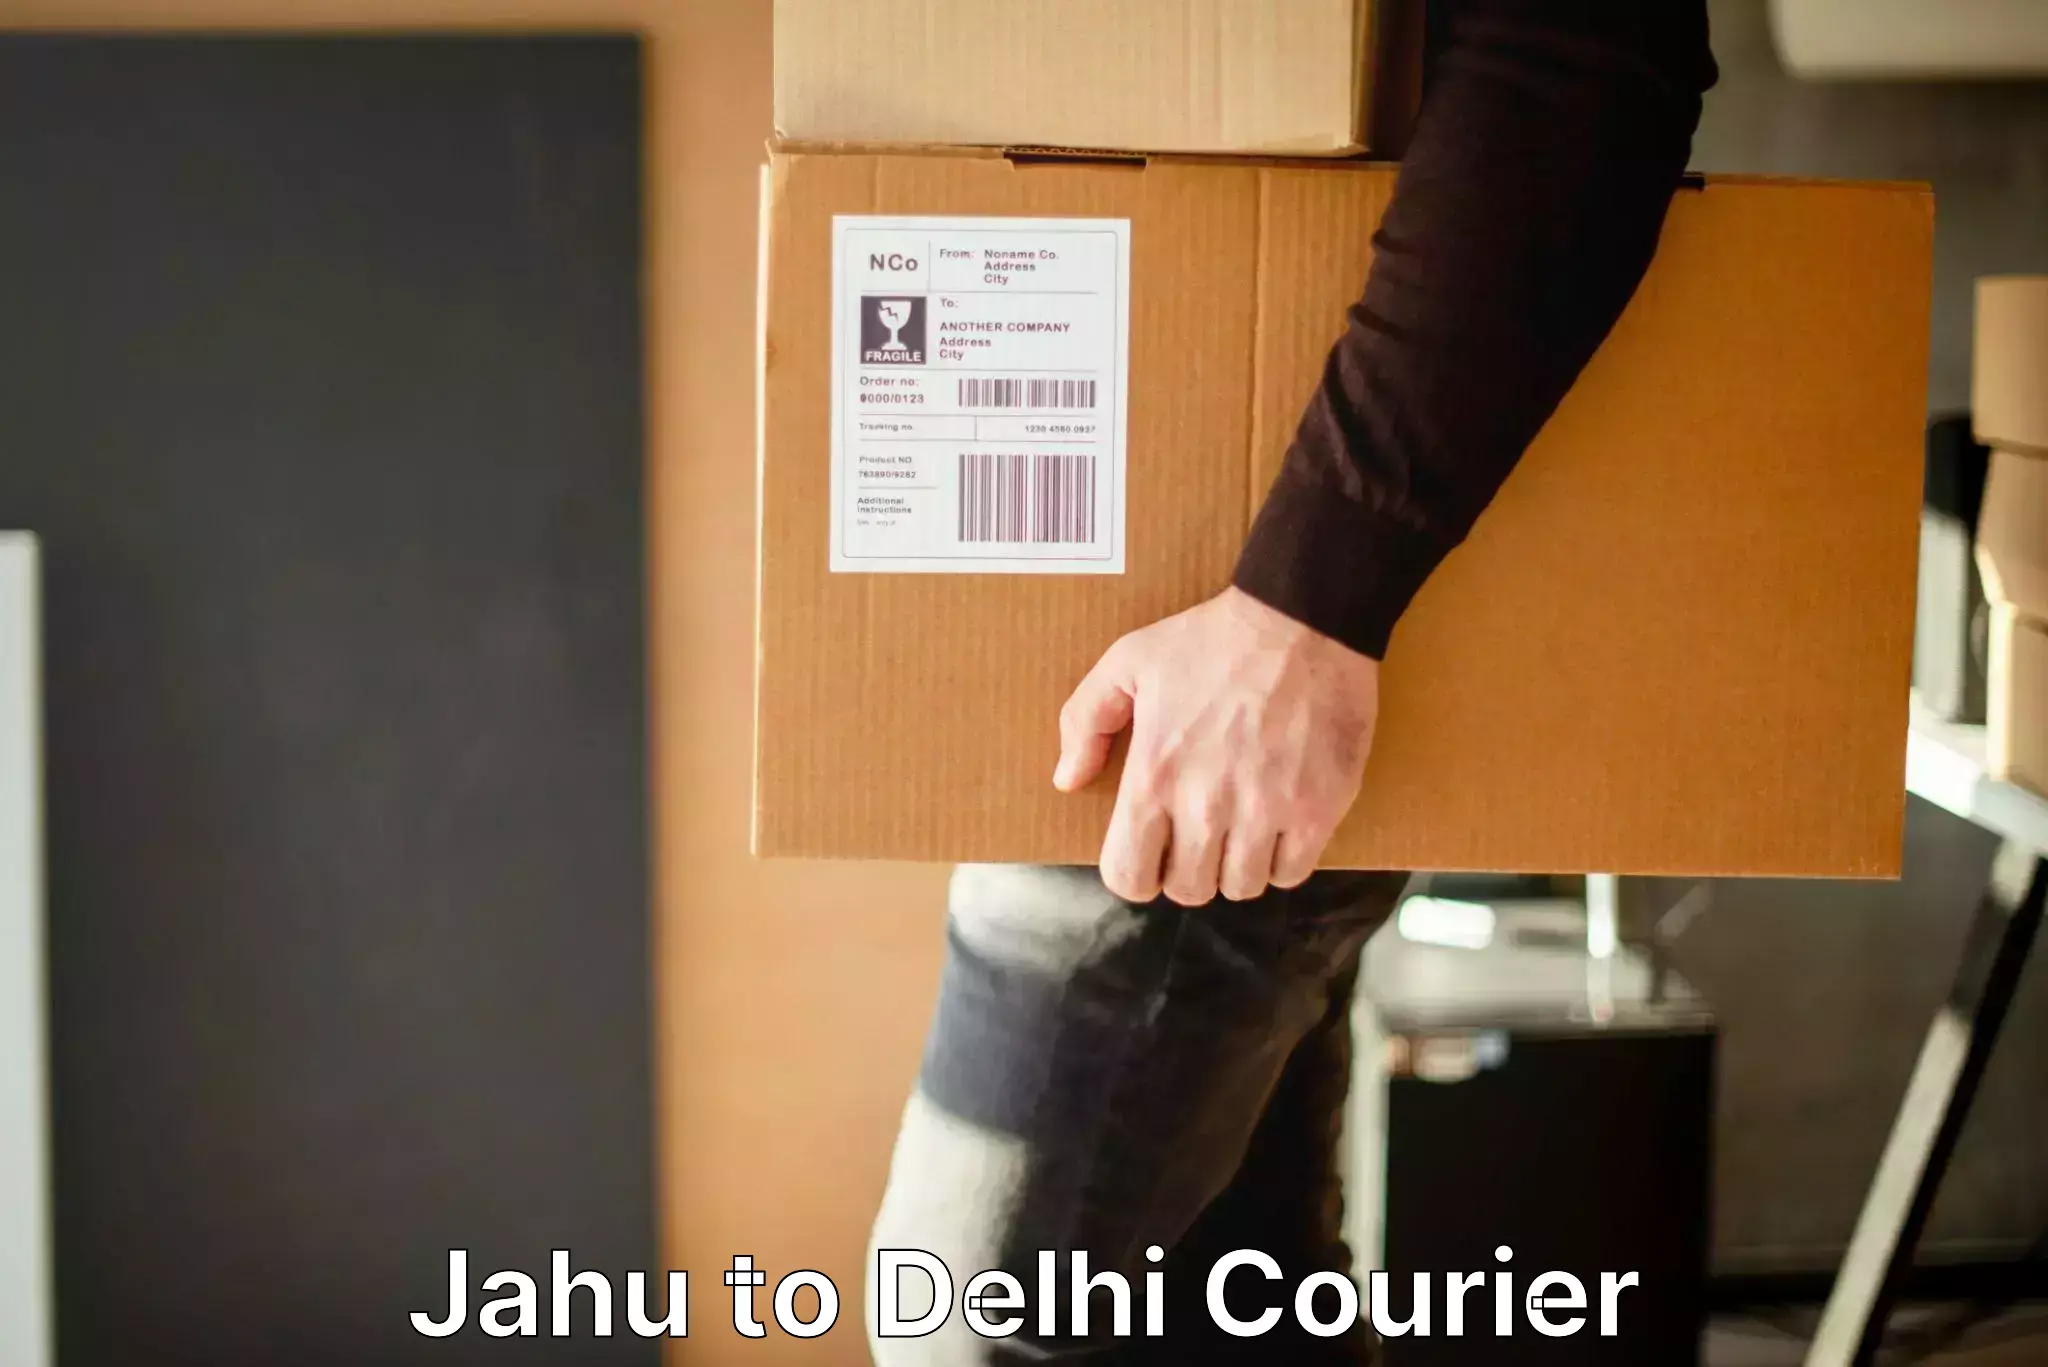 Same day luggage service Jahu to IIT Delhi